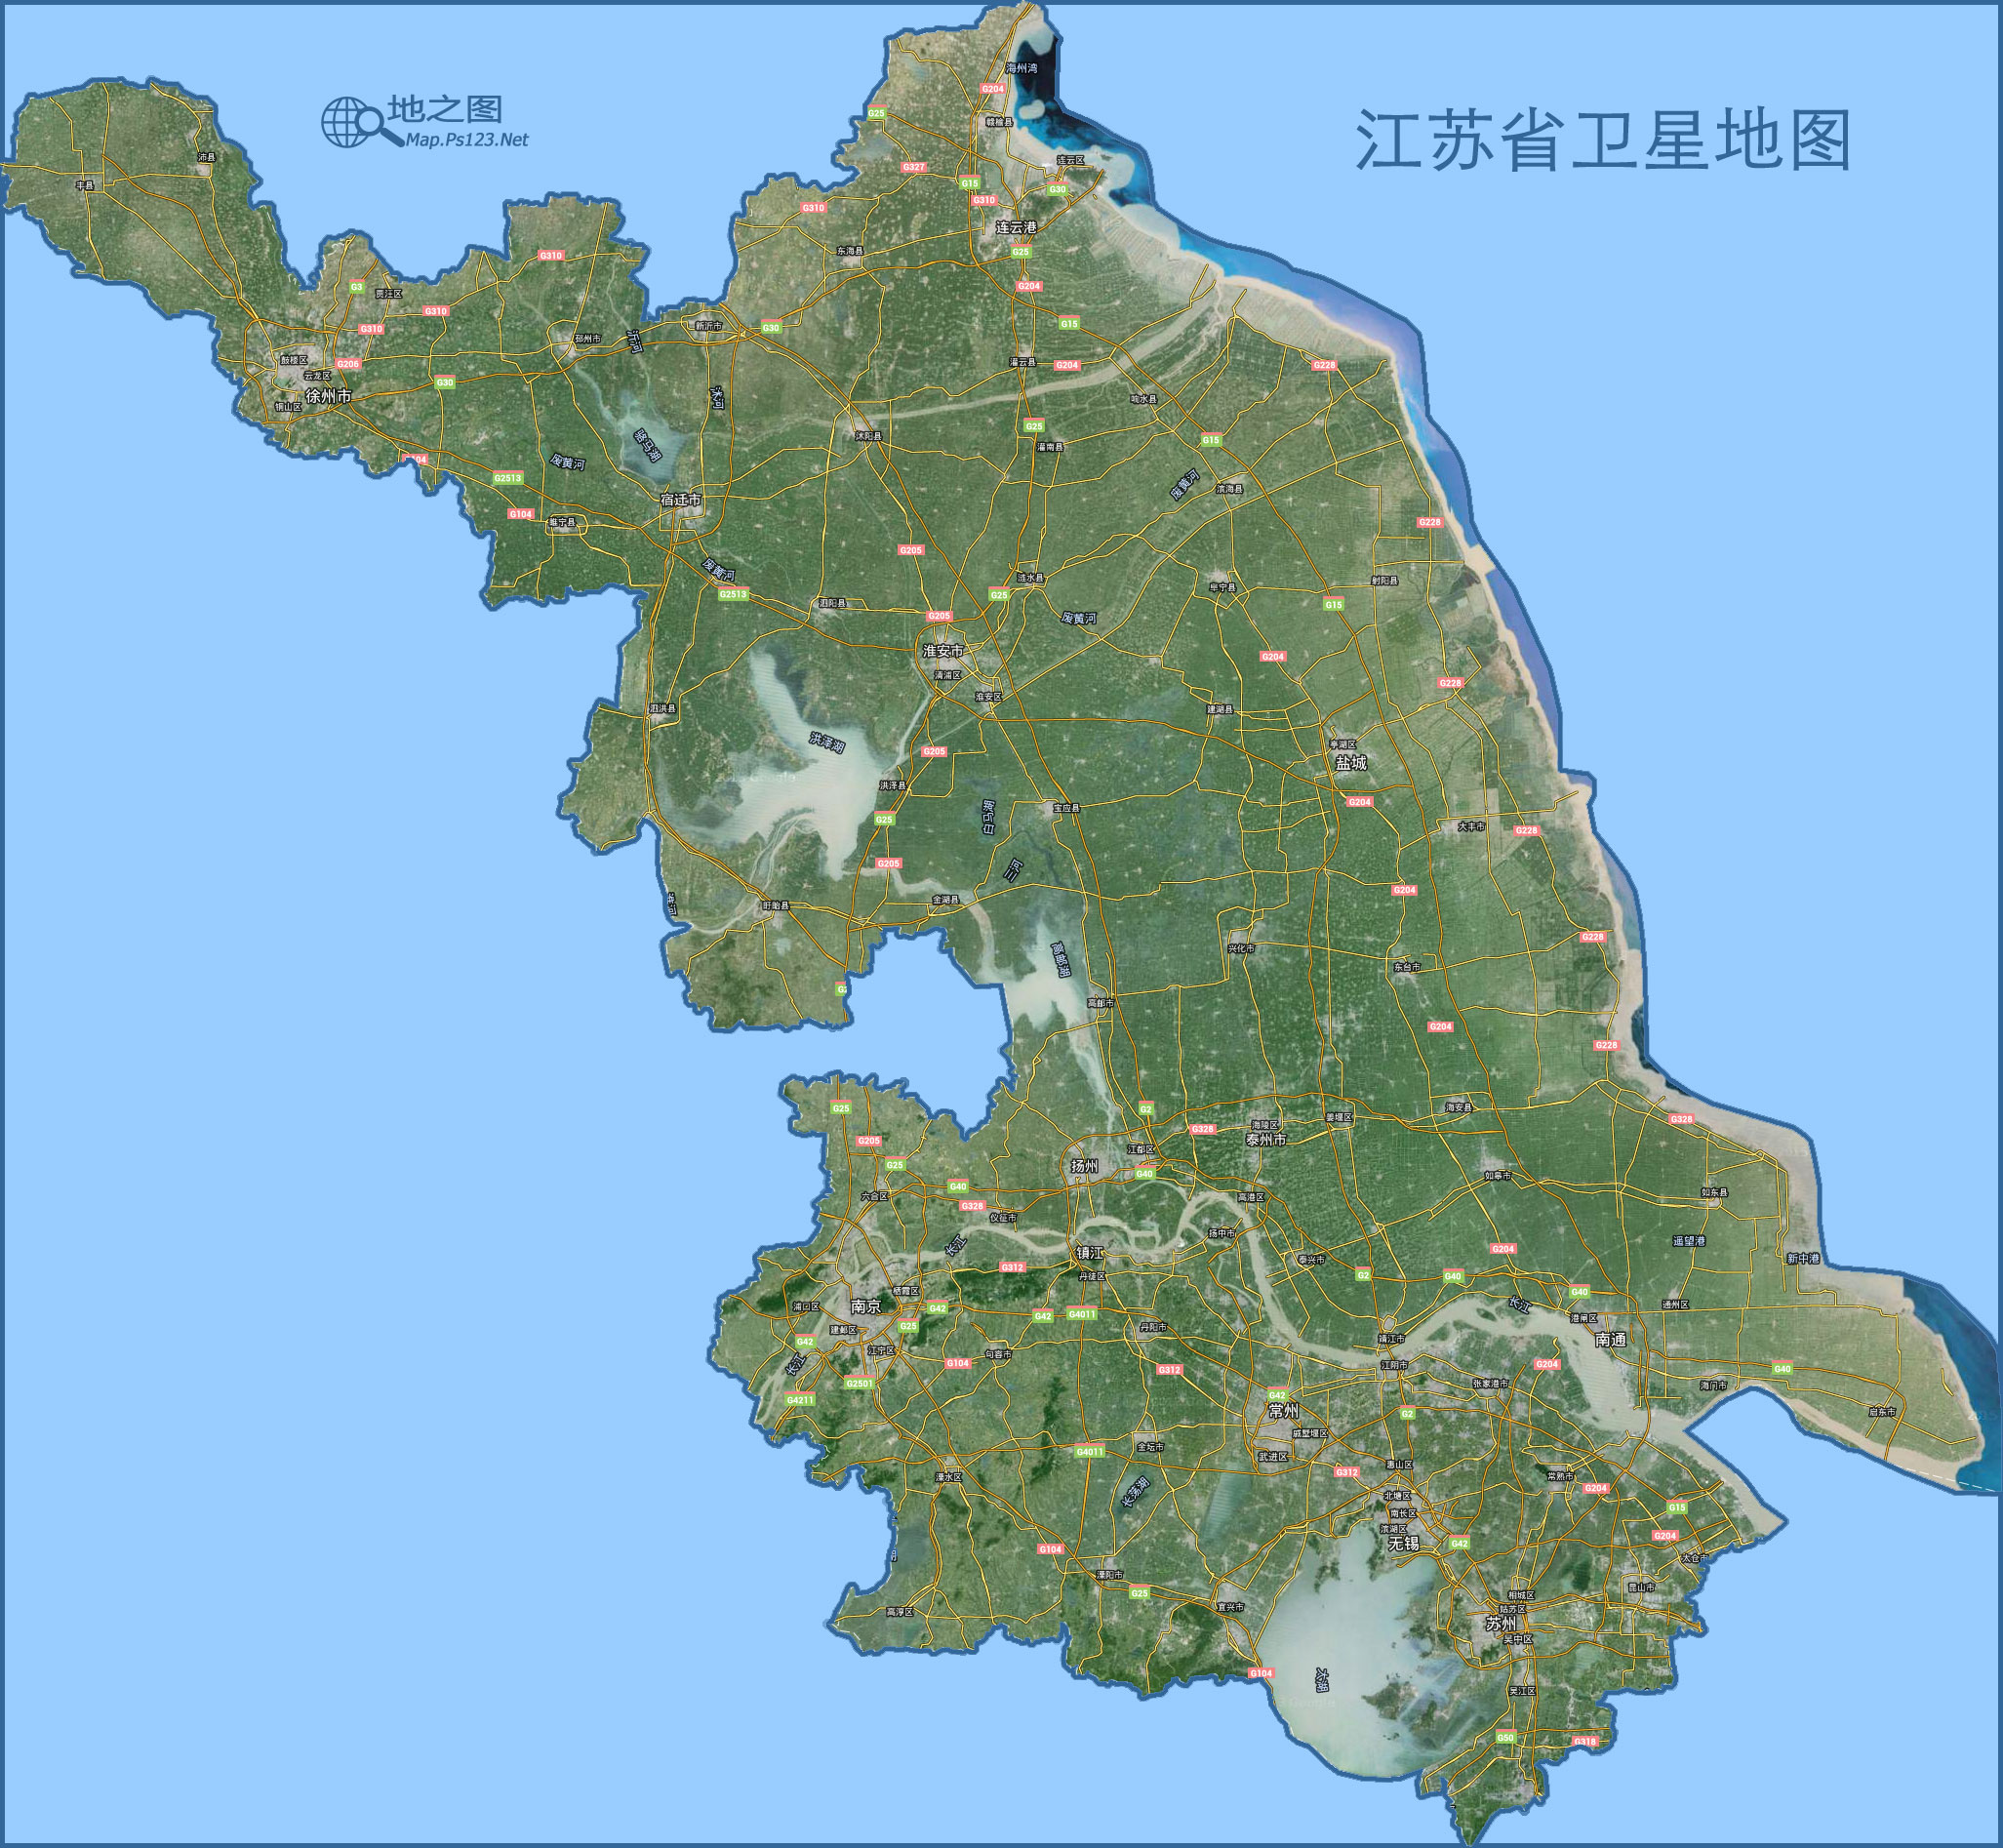 中国地图 江苏 >> 江苏地图(卫星图)  分类: 江苏  更新:2015-8-13